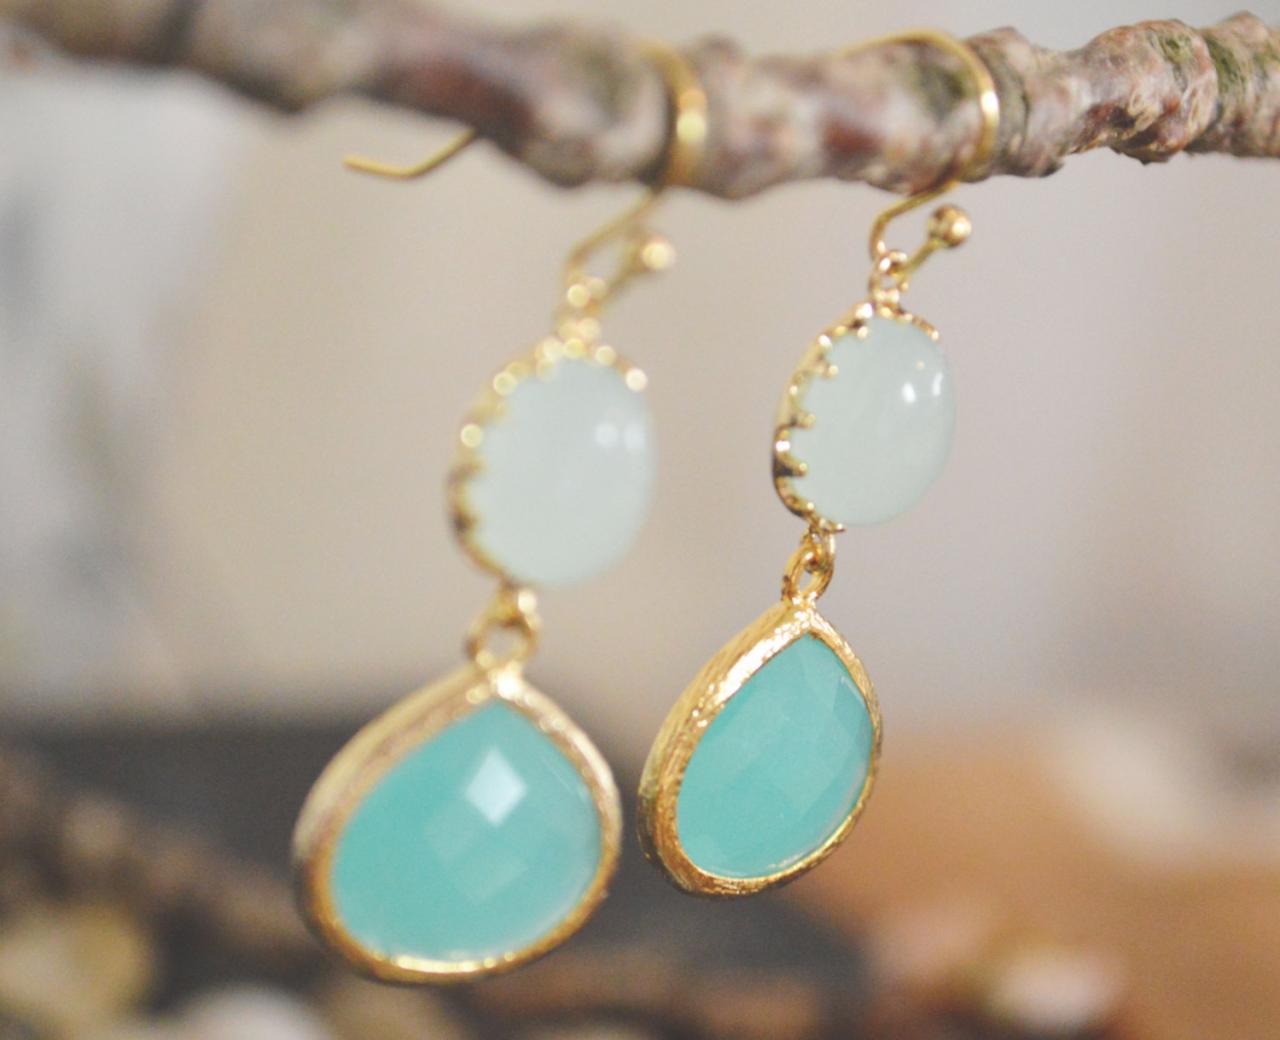 B-020 Glass Mint Earrings, Bezel Set Mint Blue Drop Earrings, Dangle Earrings, Gold Plated /bridesmaid Gifts/everyday Jewelry/